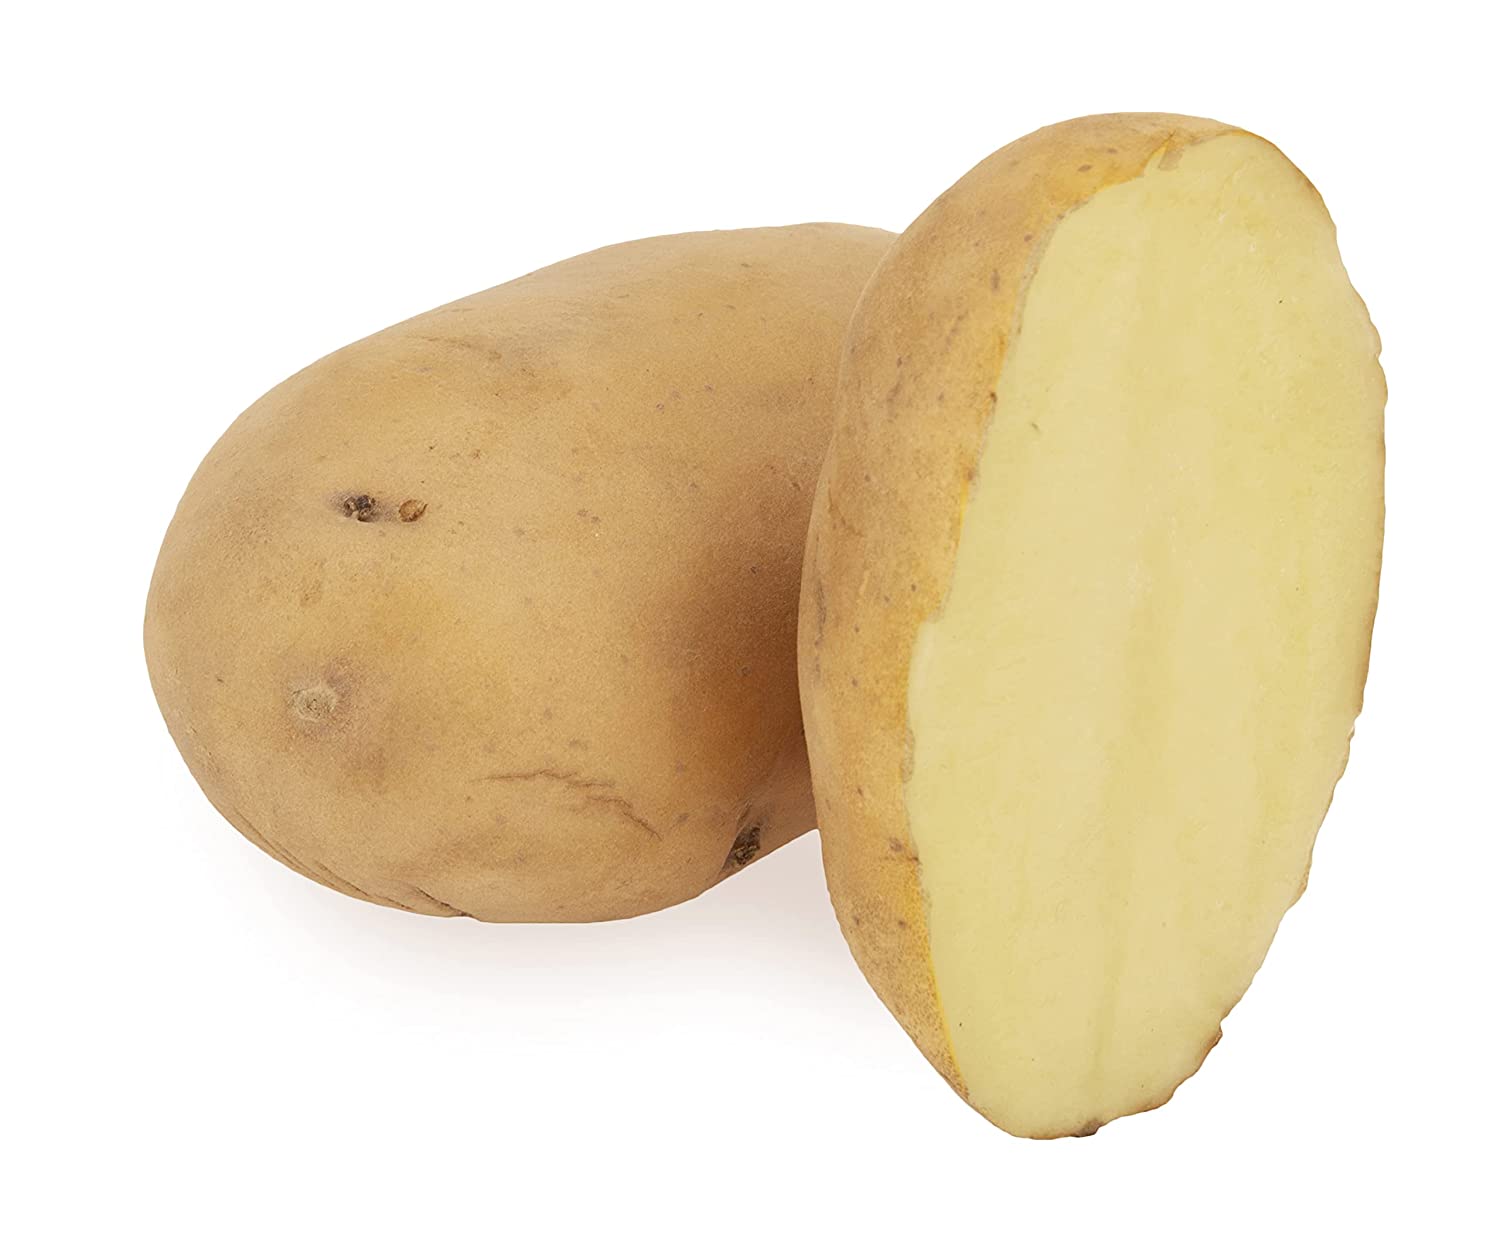 Fresh Potato, 1kg